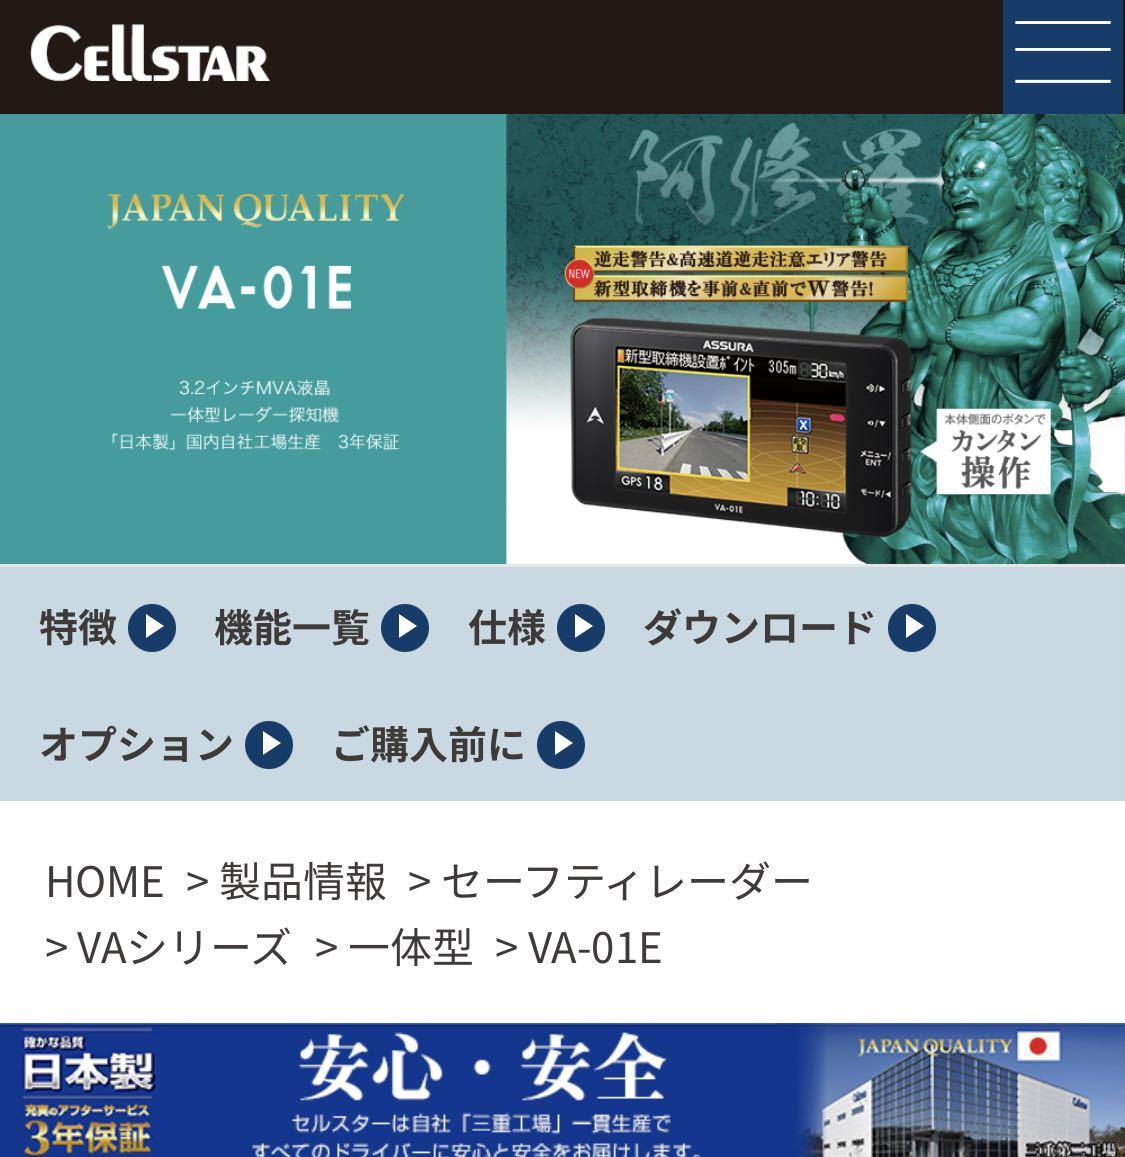 13241円 祝日 セルスター レーダー探知機 VA-01E 日本製 3年保証 GPSデータ更新無料 ガリレオ衛星対応 逆走警告高速道逆走注意エリアを収録 3.2インチ